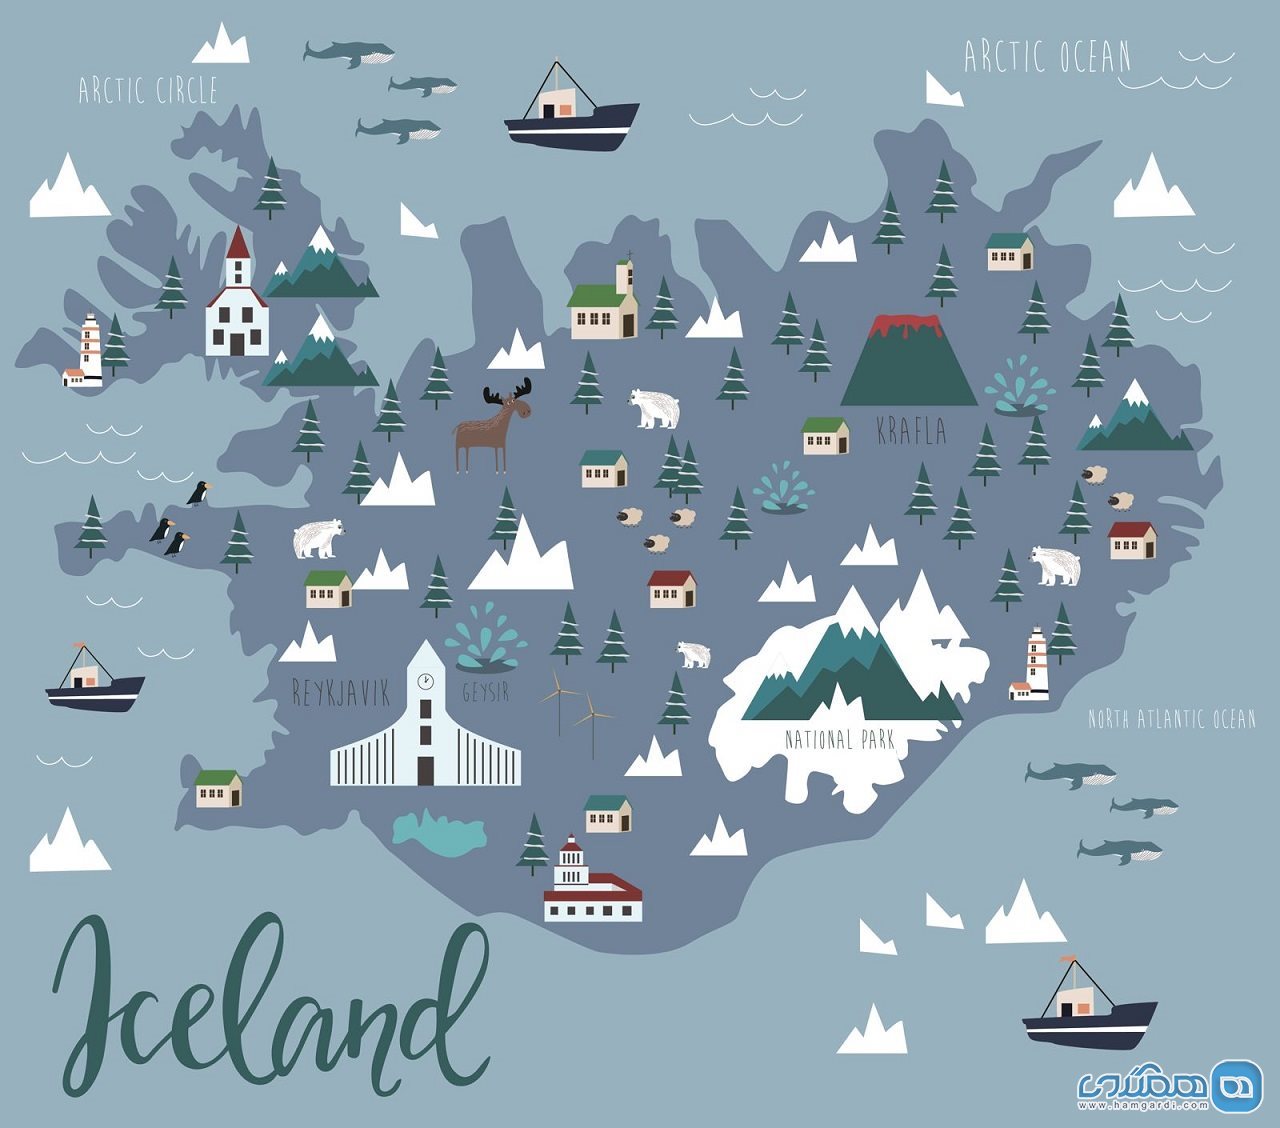 سفر به ایسلند / ده منظره طبیعی خیره کننده در ایسلند که باید ببینید